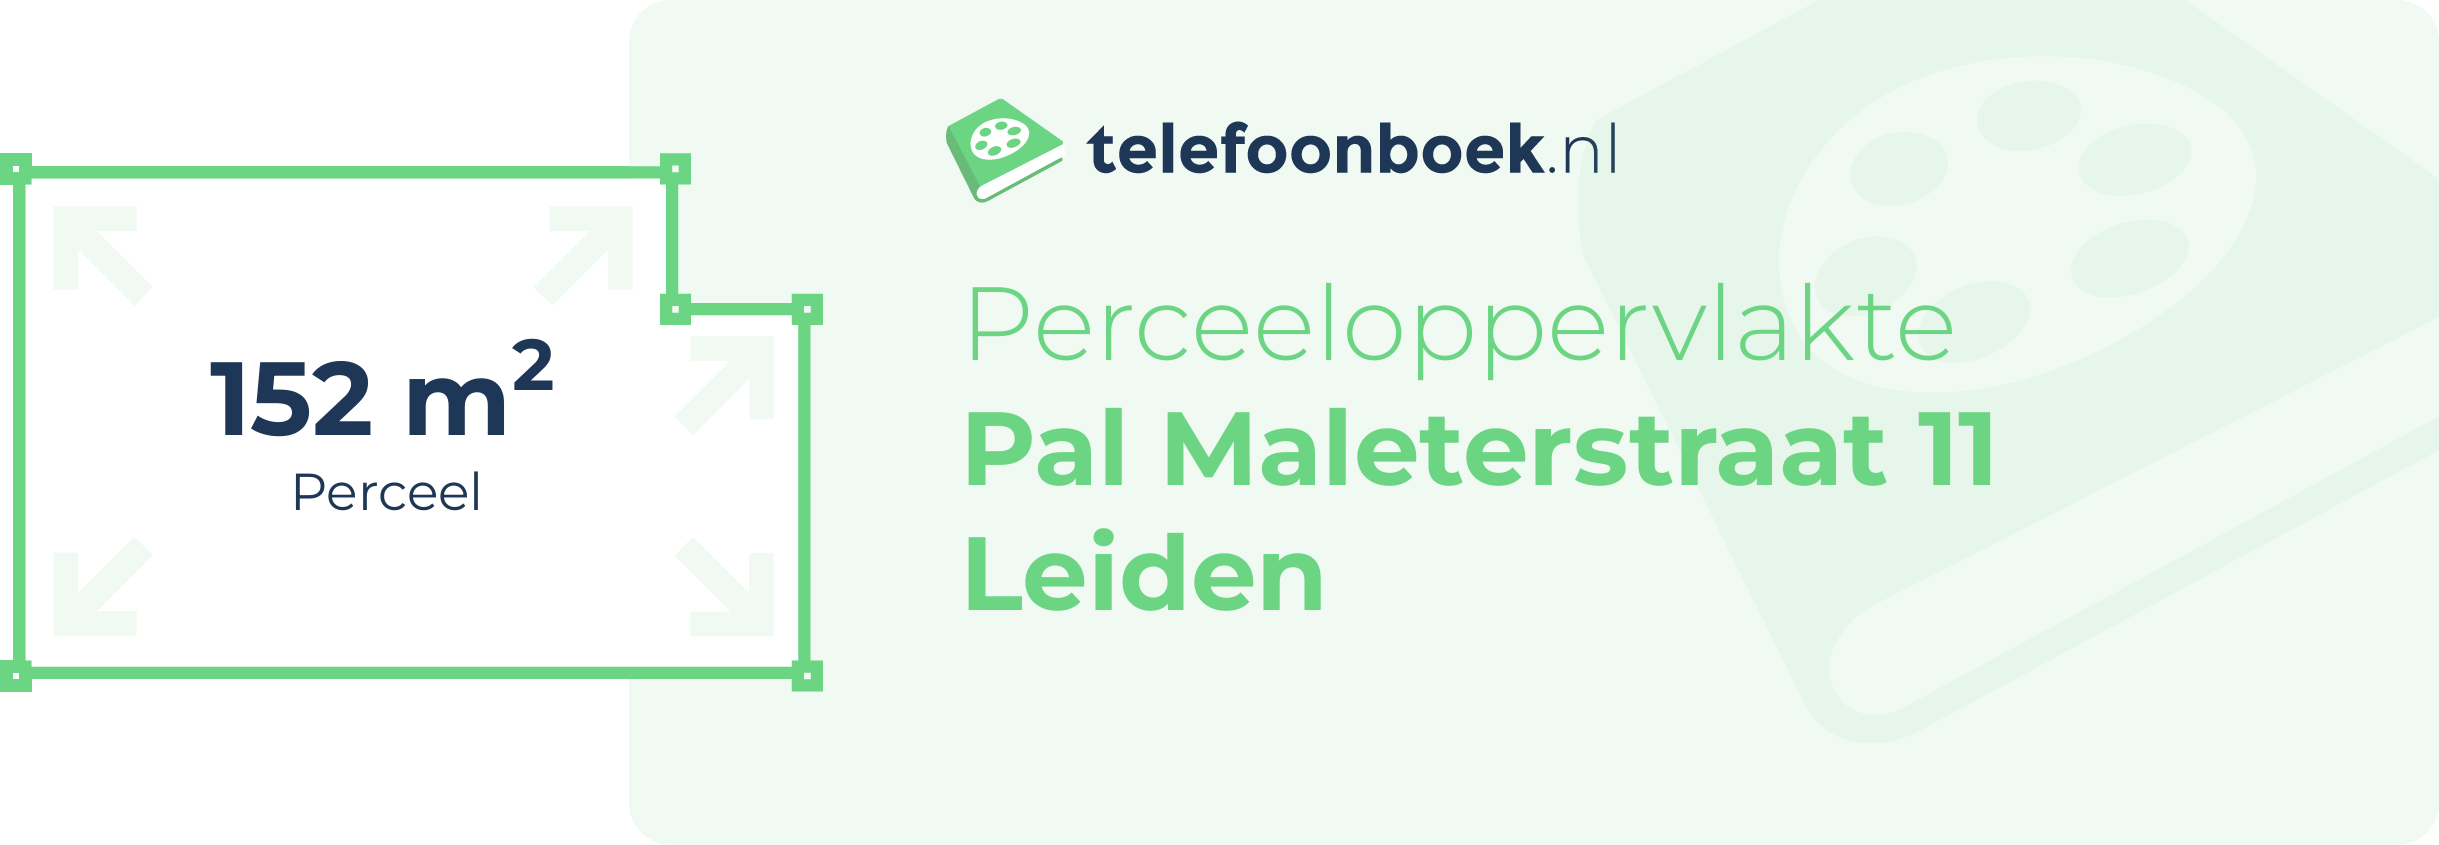 Perceeloppervlakte Pal Maleterstraat 11 Leiden